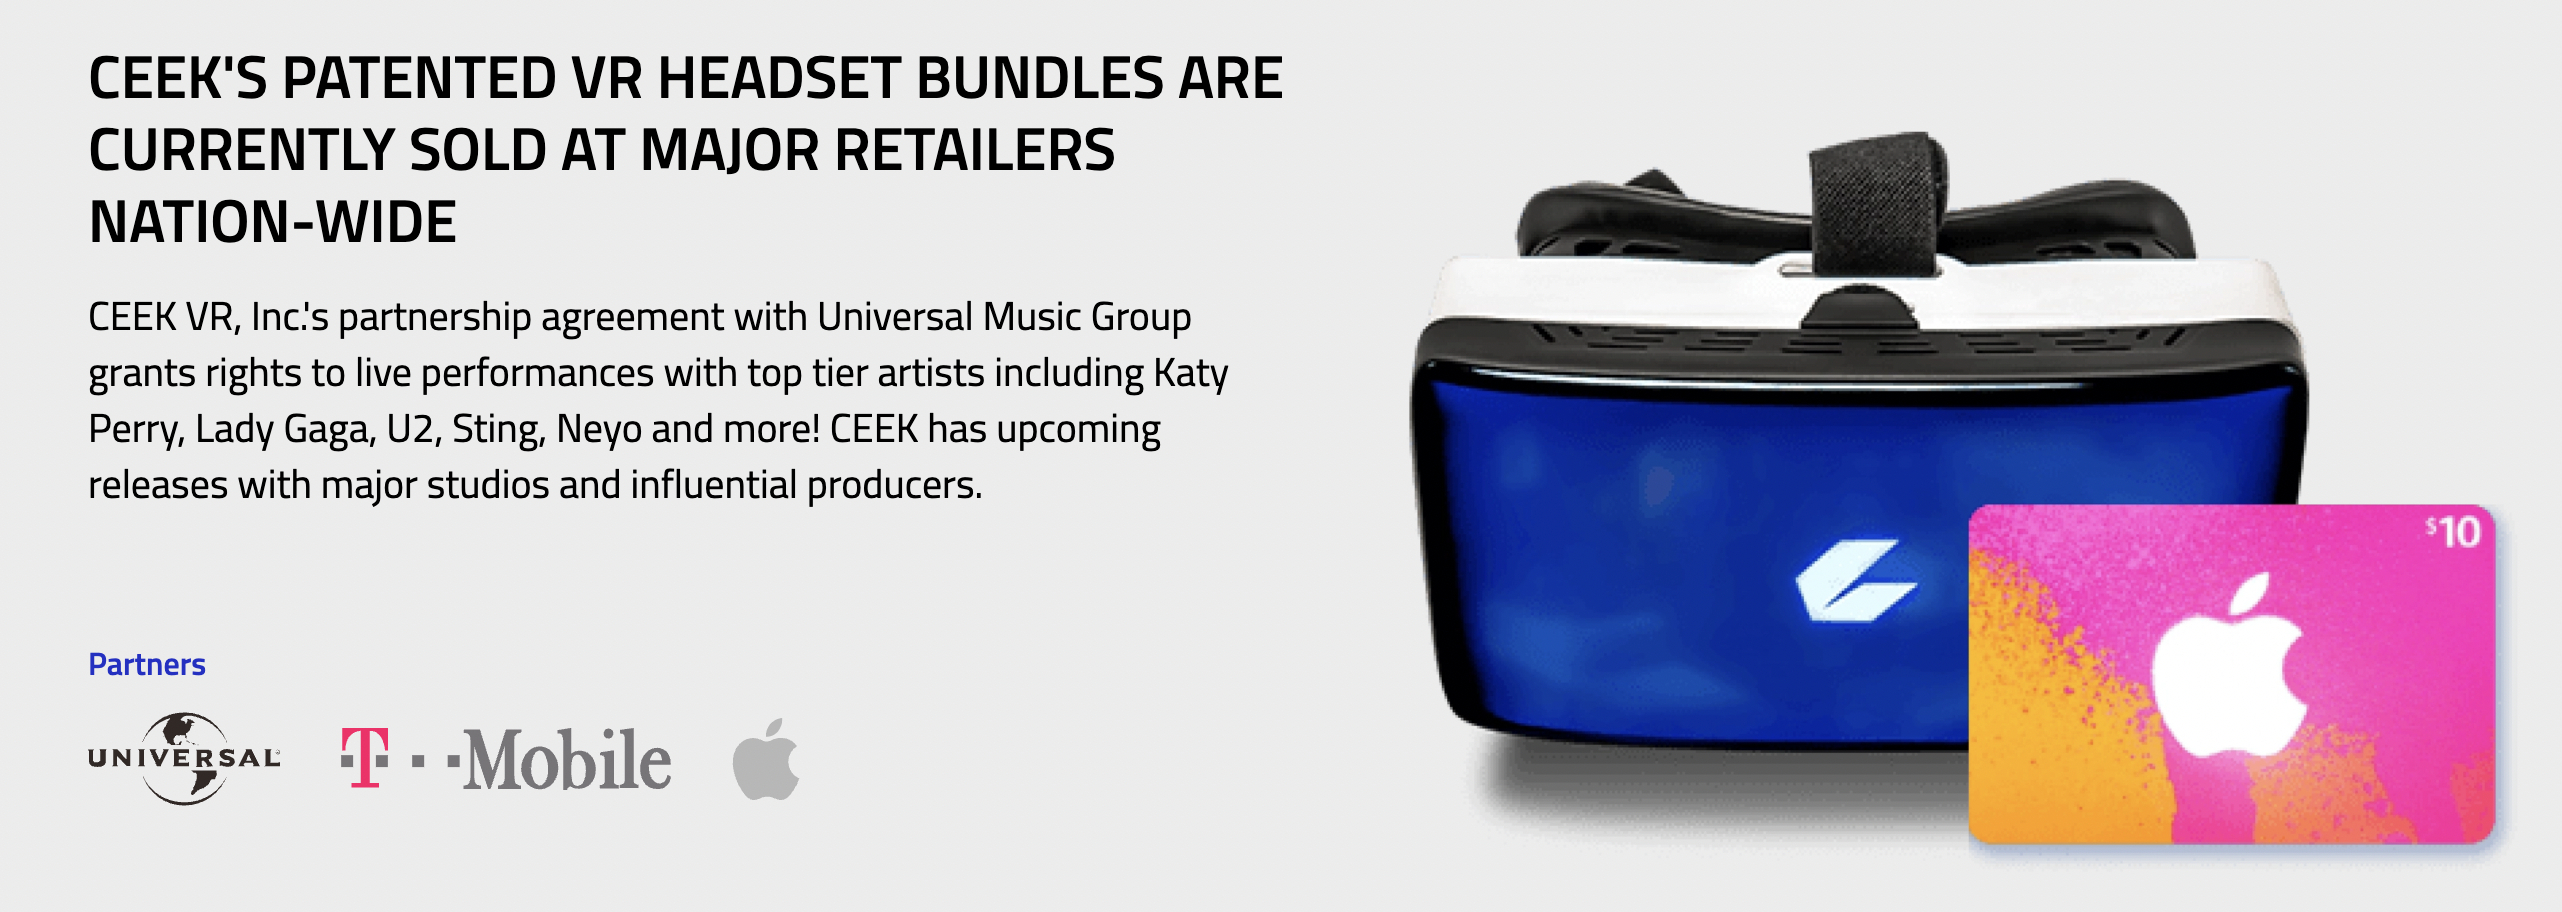 CEEK's patented VR headset bundle